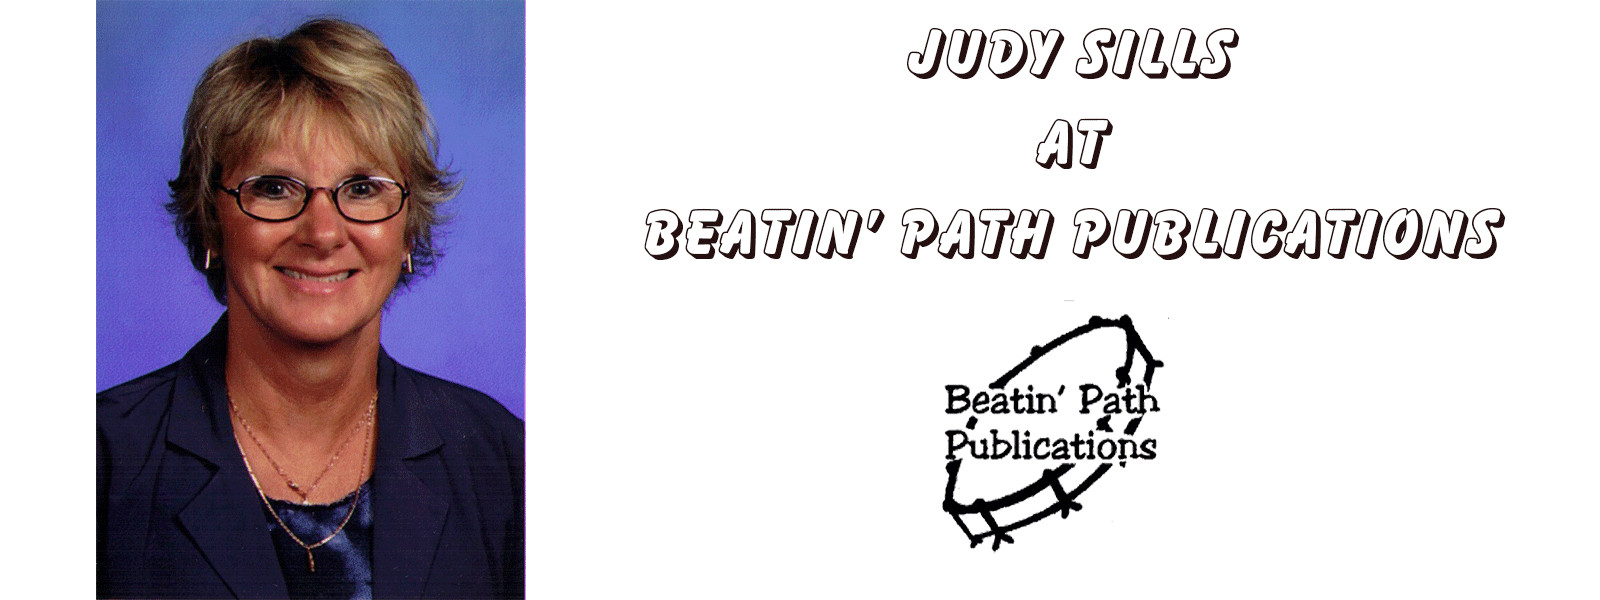 Judy Sills at Beatin' Path Publications